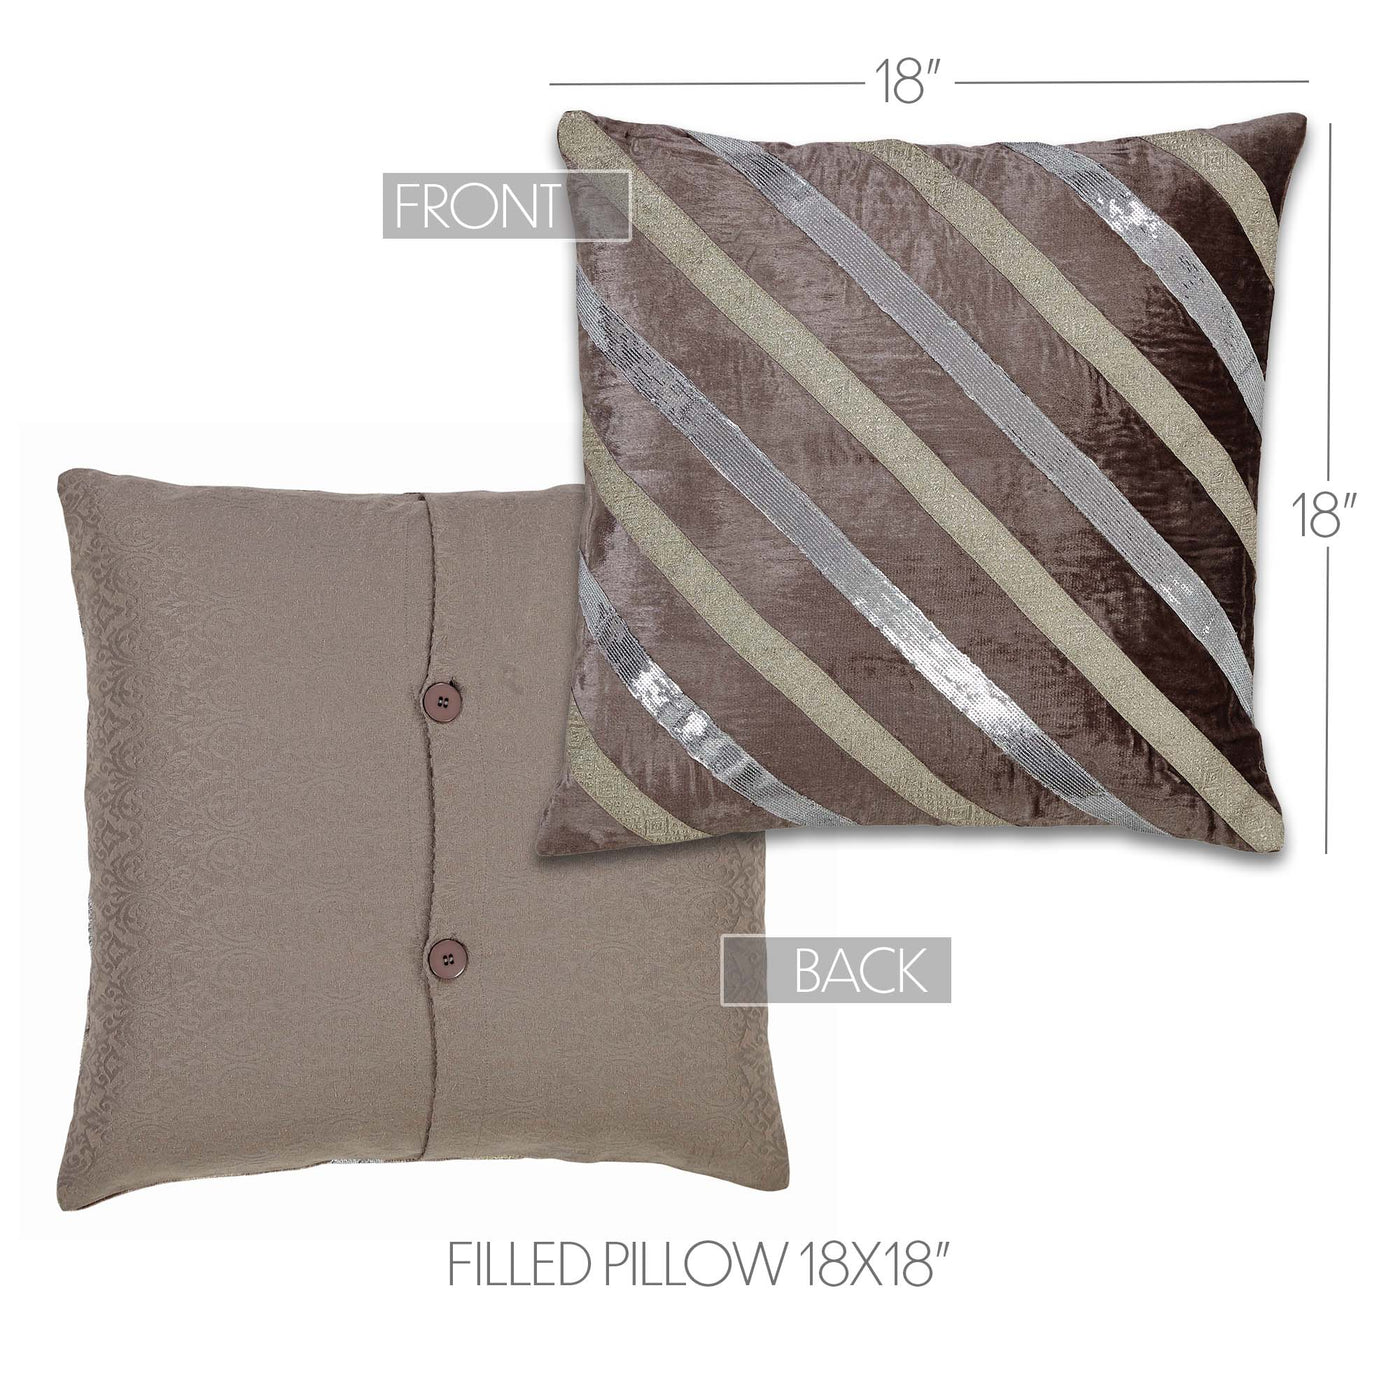 Allura Diagonal Striped Glitzy Pillow 18"